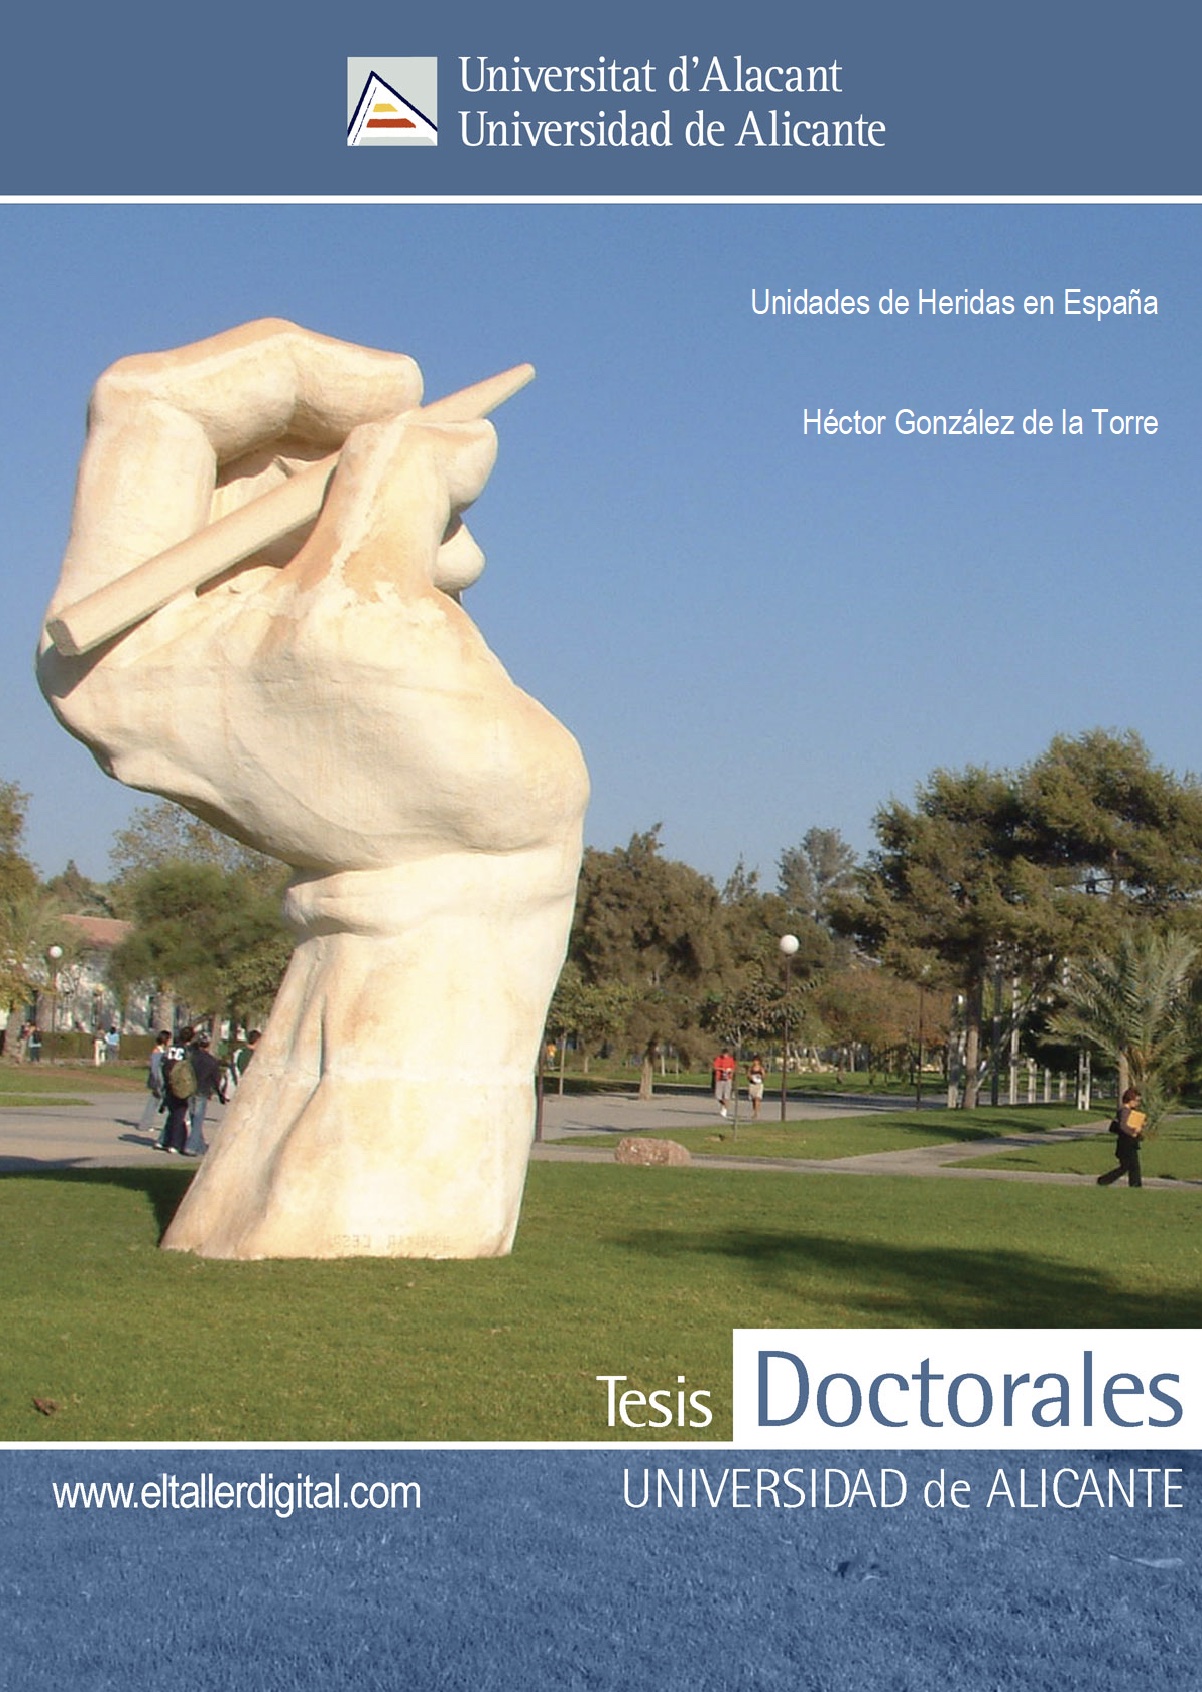 Unidades de heridas en España, por Dr. Héctor García de la Torre, Universidad de Alicante 2017.